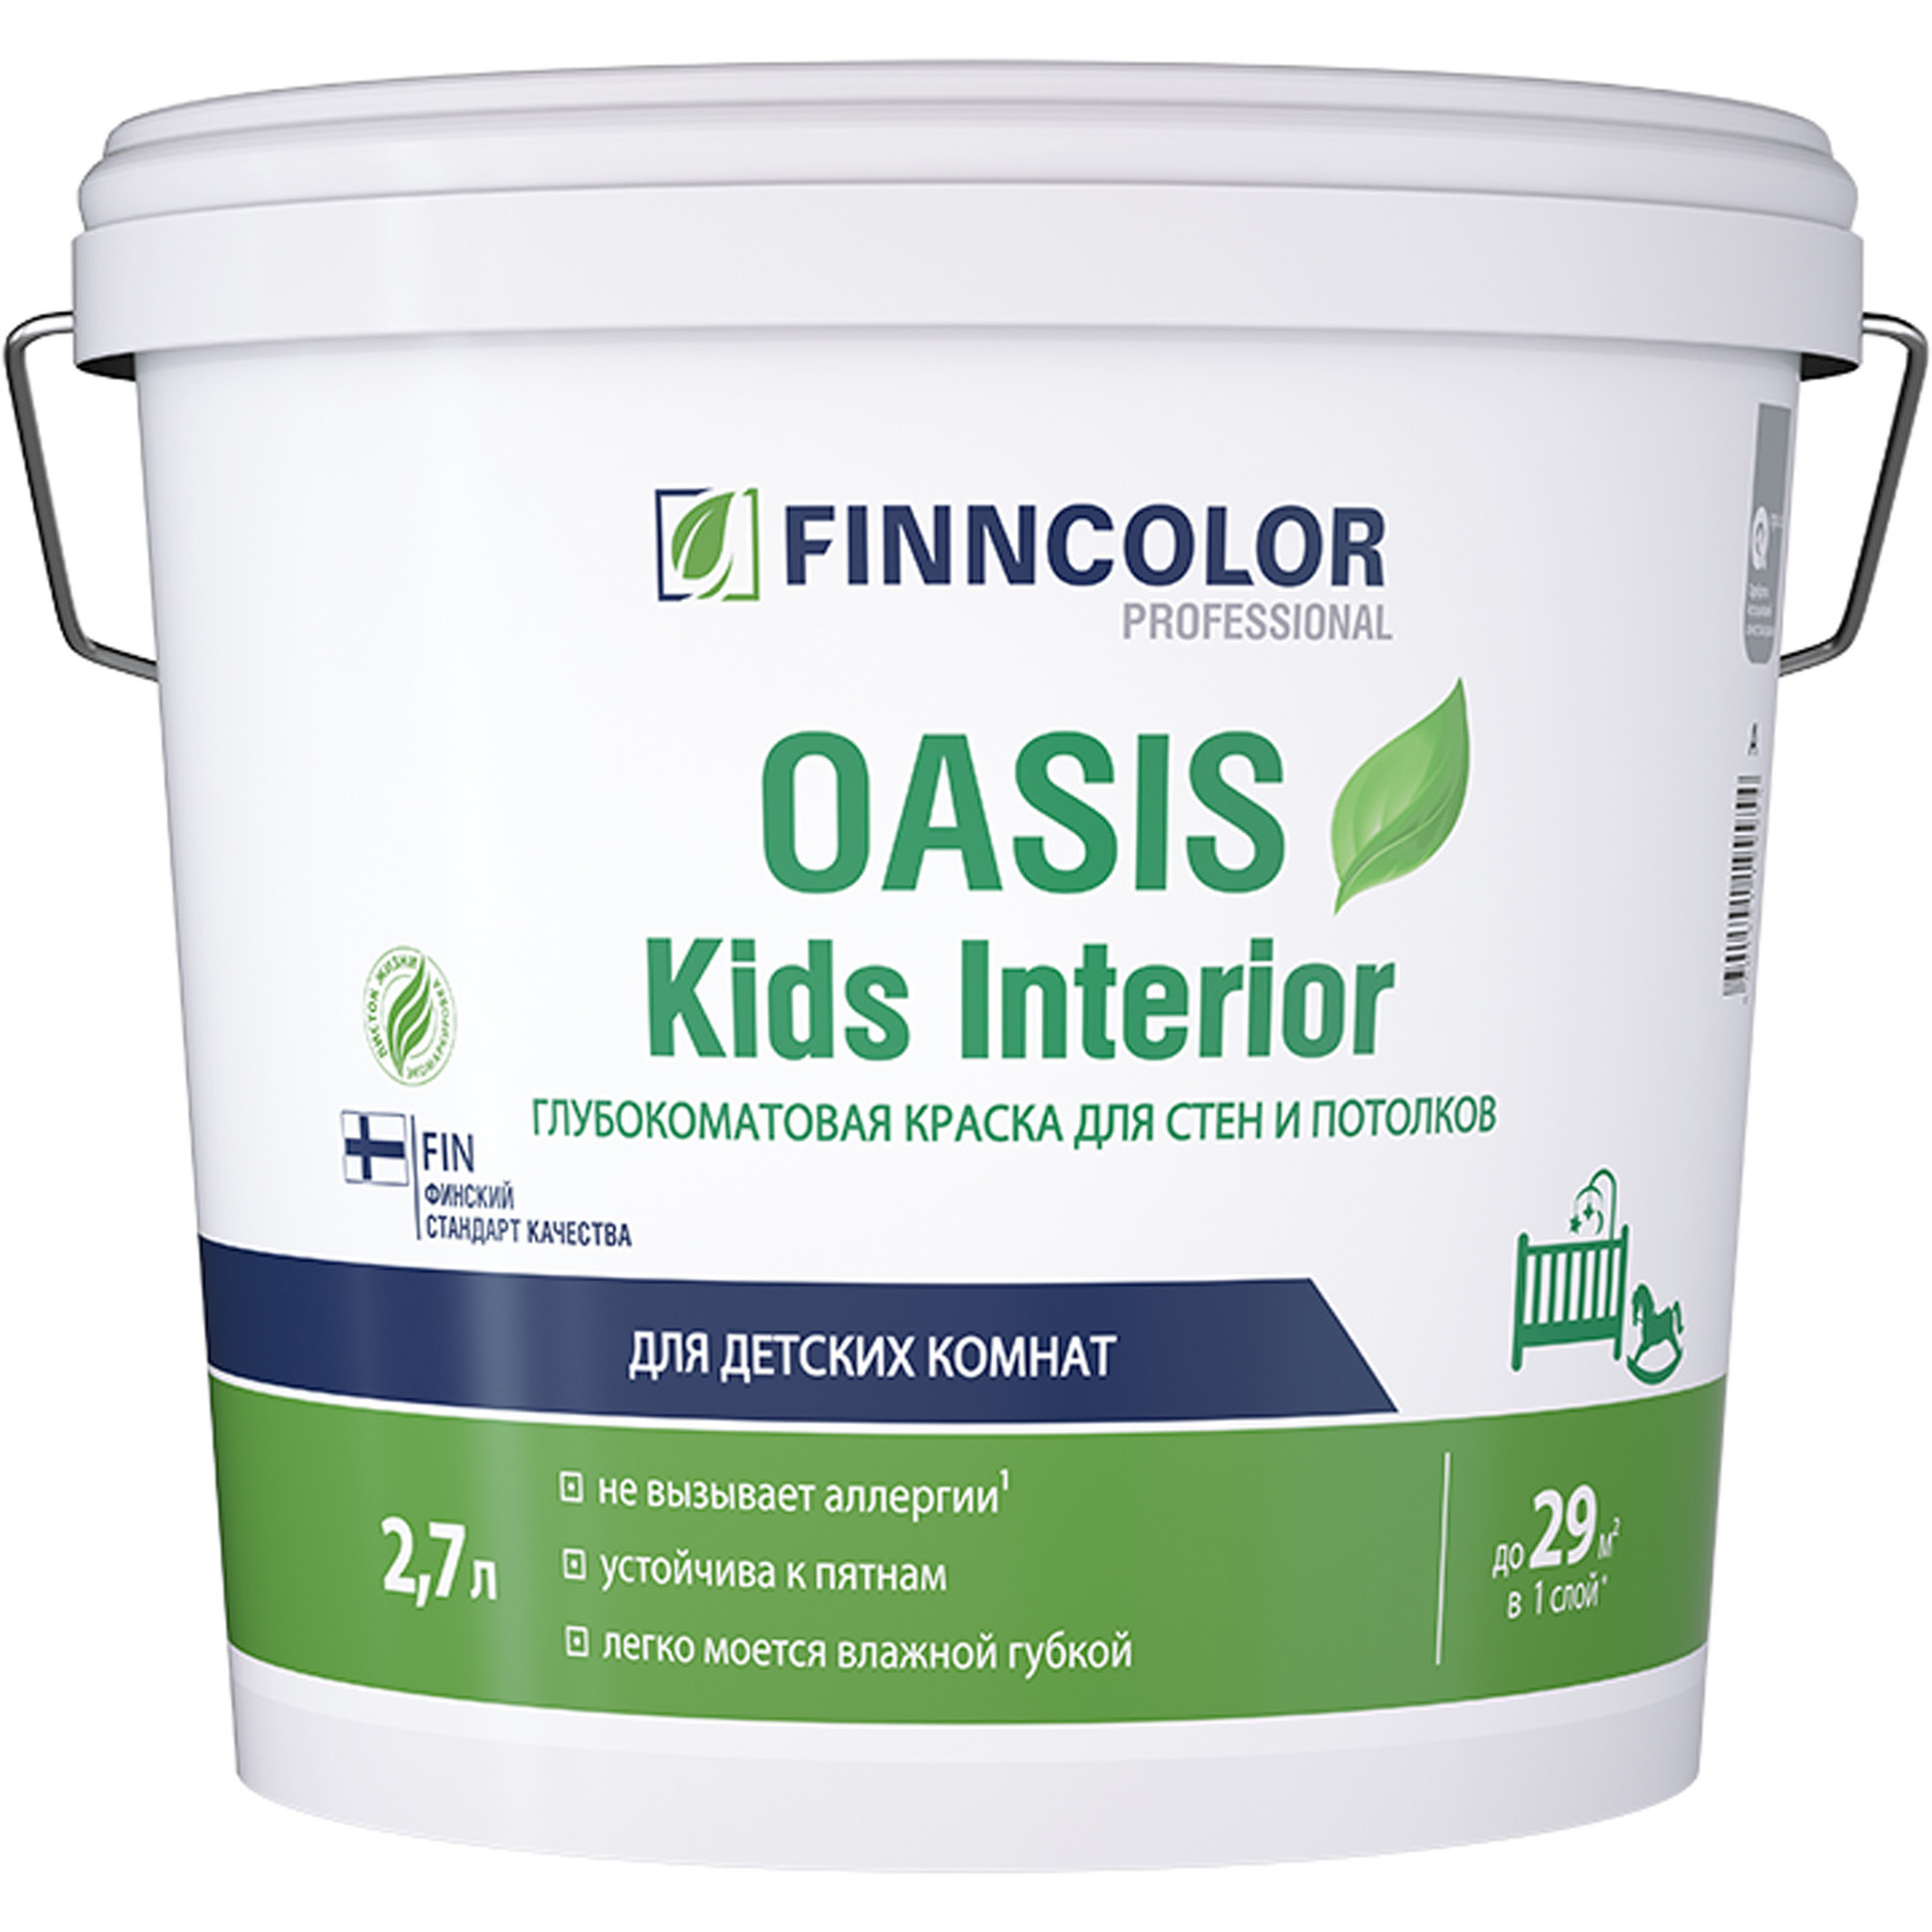 Купить Краска для детских finncolor Oasis kids interior база C бесцветная глубокоматовая 2.7 л